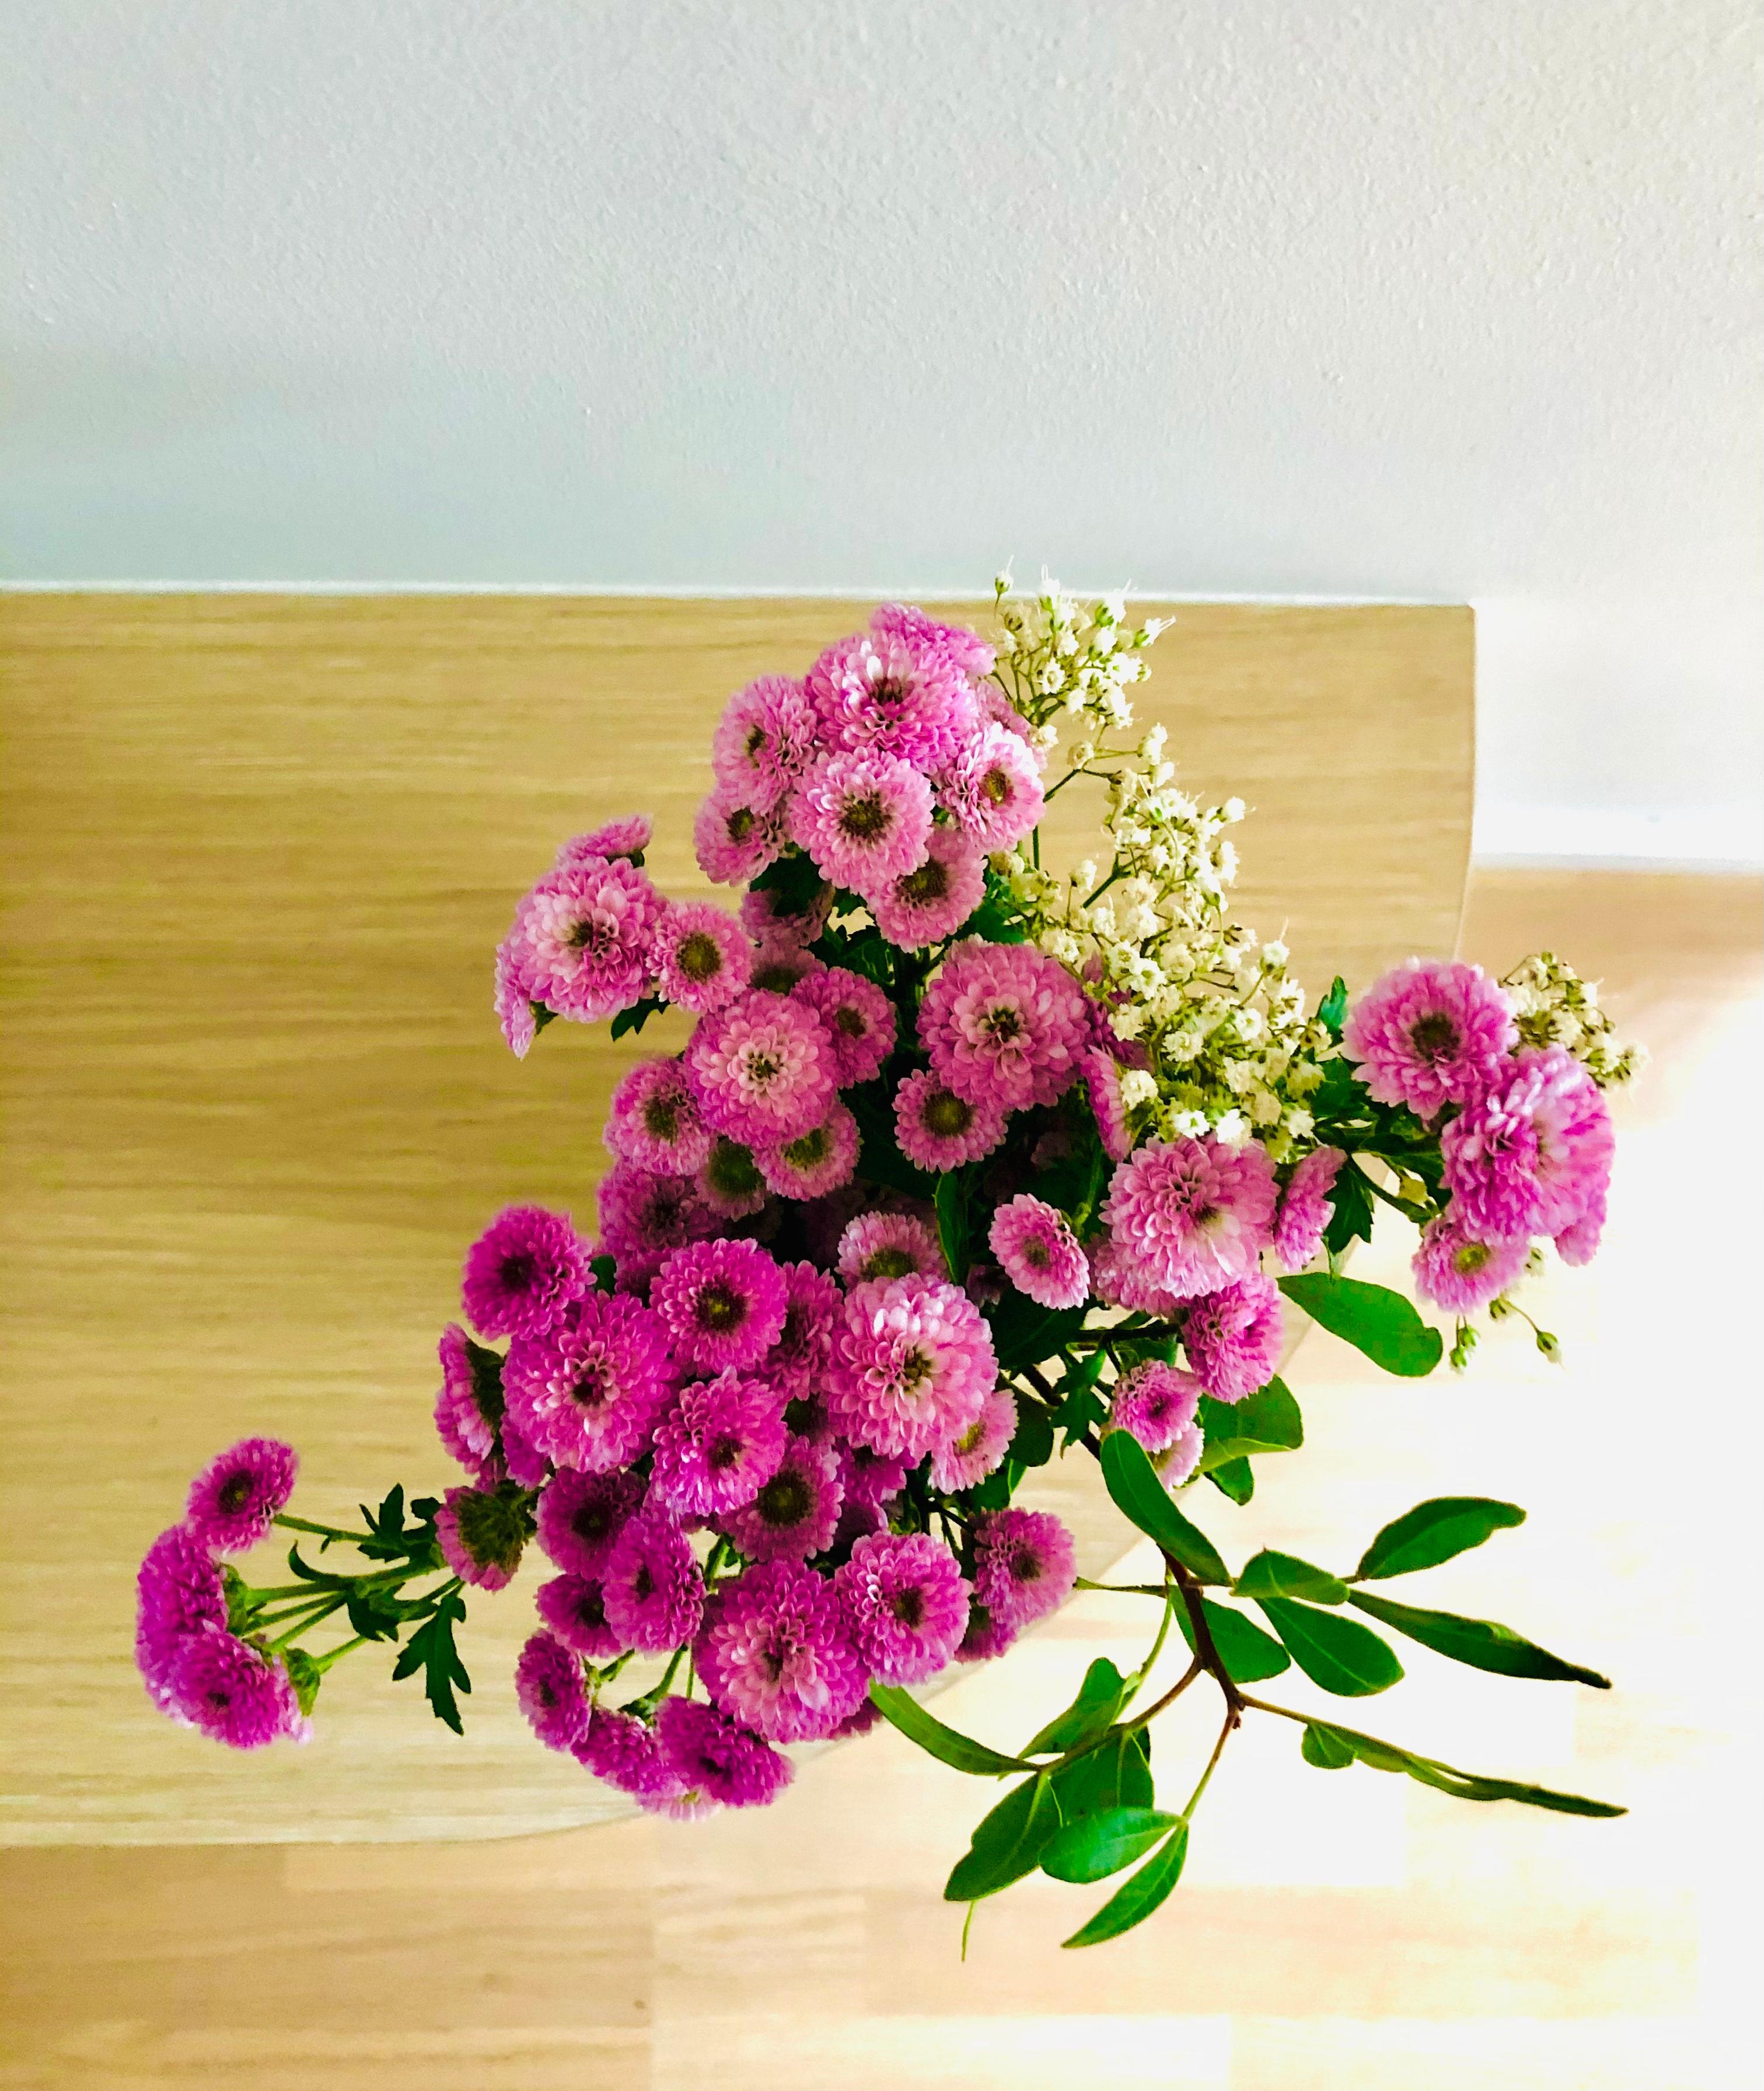 Ihr Lieben! Zum Wochenende sende ich einen kleinen, ganz unspektakulären Blumengruß 💐 #freshflowerfriday #blumen